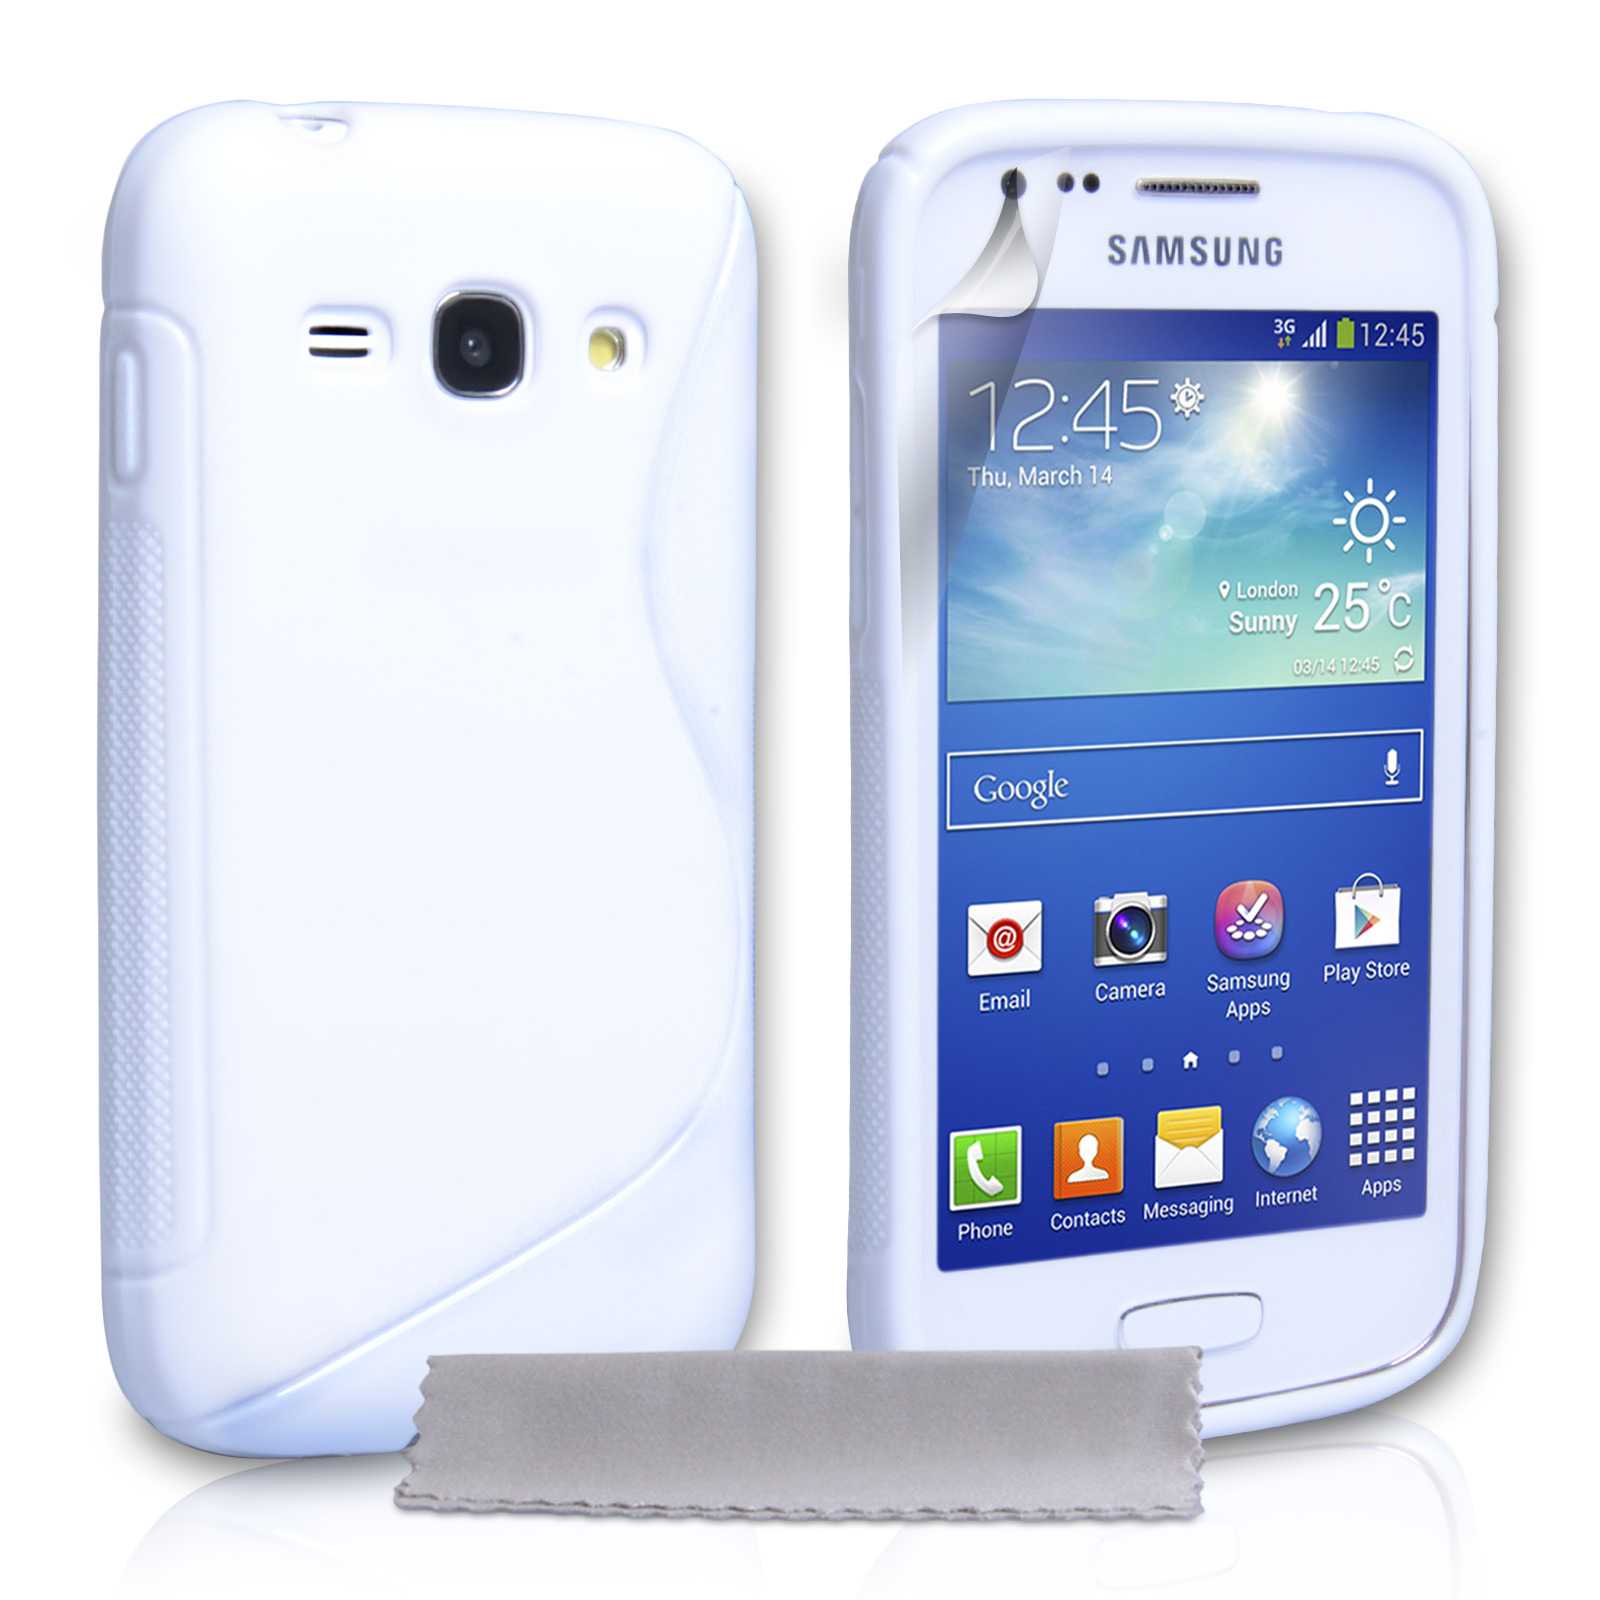 Samsung galaxy ace 3 lte s7275 (черный) - купить , скидки, цена, отзывы, обзор, характеристики - мобильные телефоны